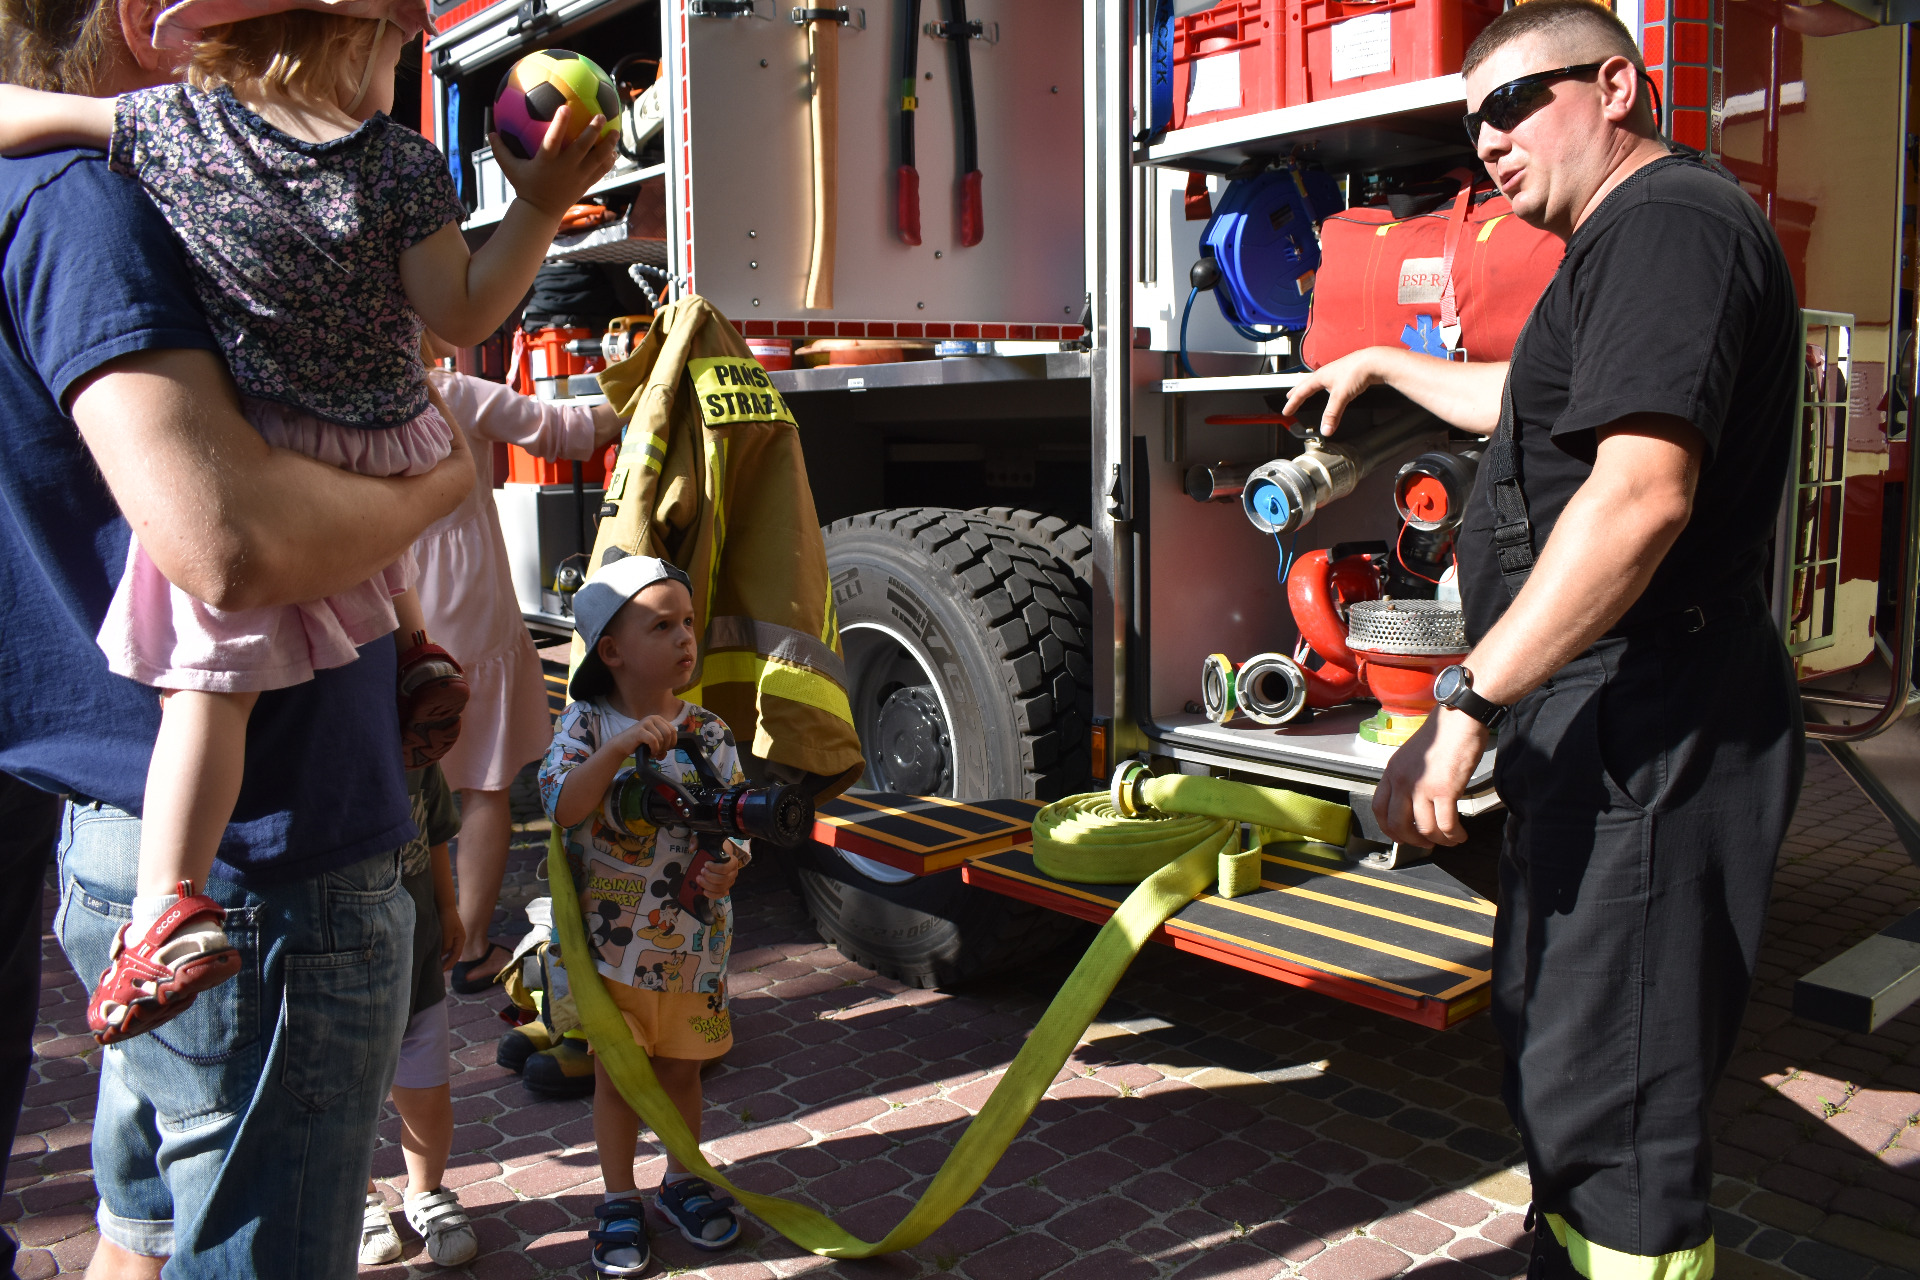 Chłopiec przy wozie strażackim trzymający węża. Tata z synkiem na rączkach podczas rozmowy z strażakiem o sprzęcie strażackim.